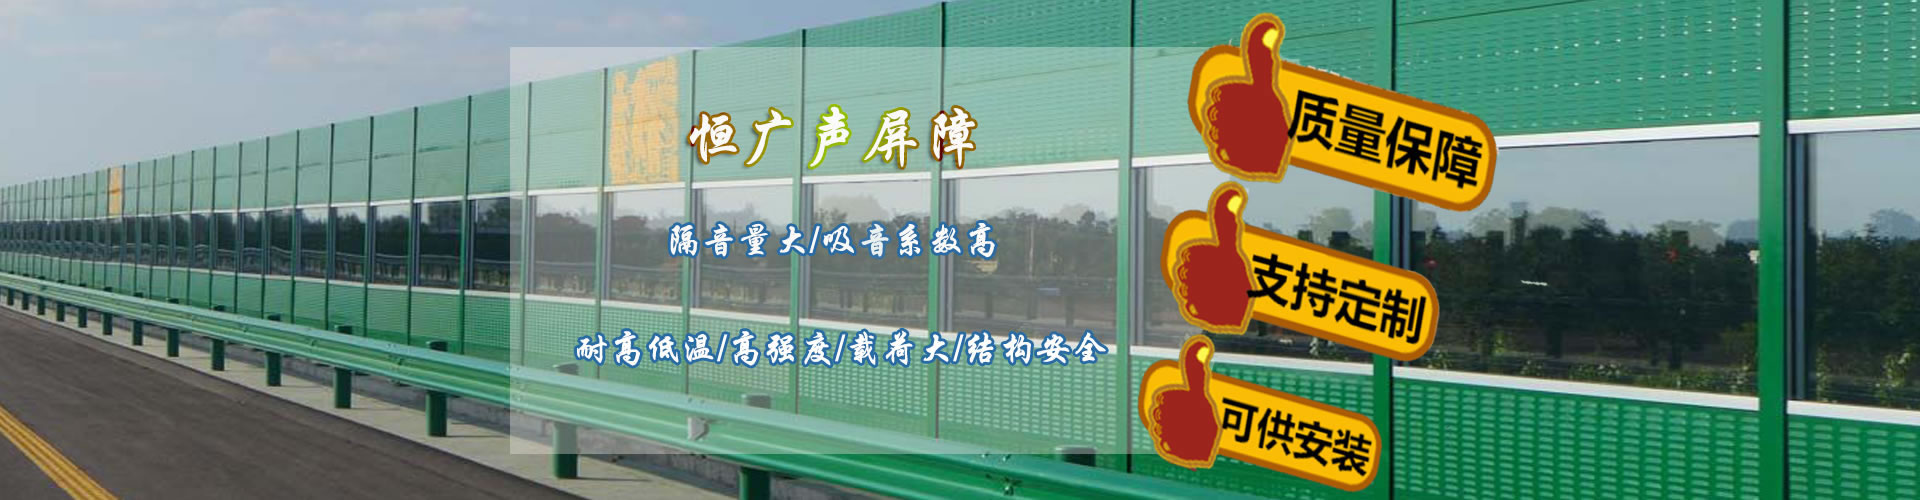 安平县恒广交通设施有限公司